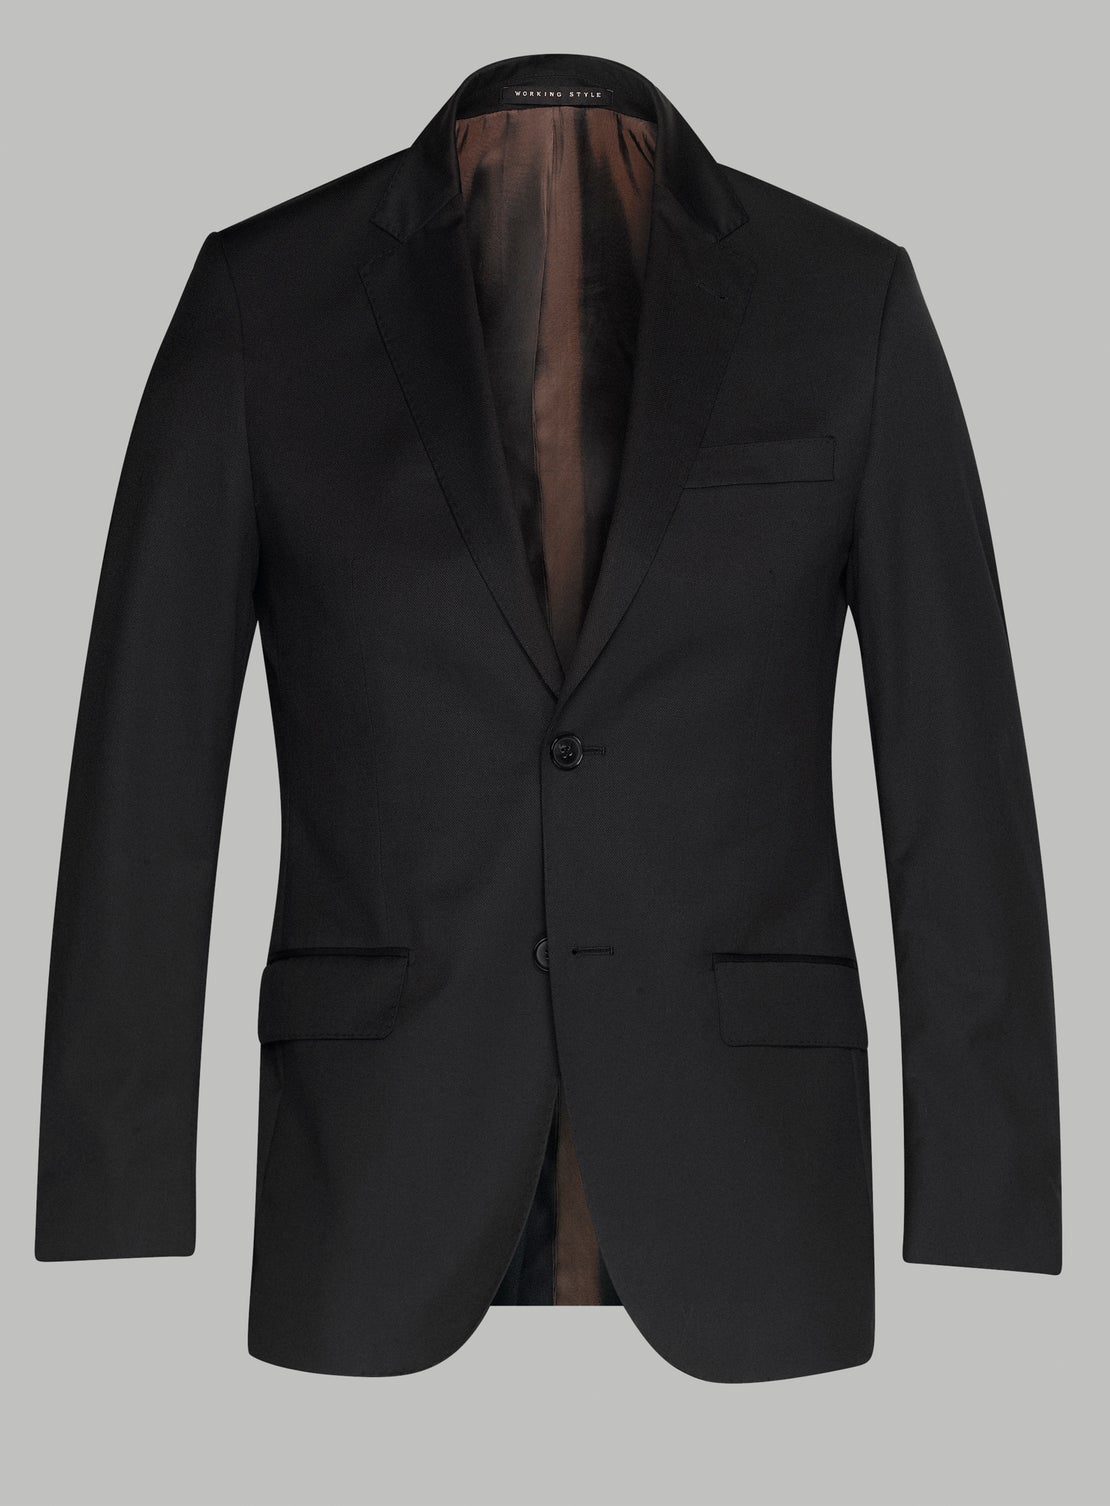 Thom Plain Black Suit